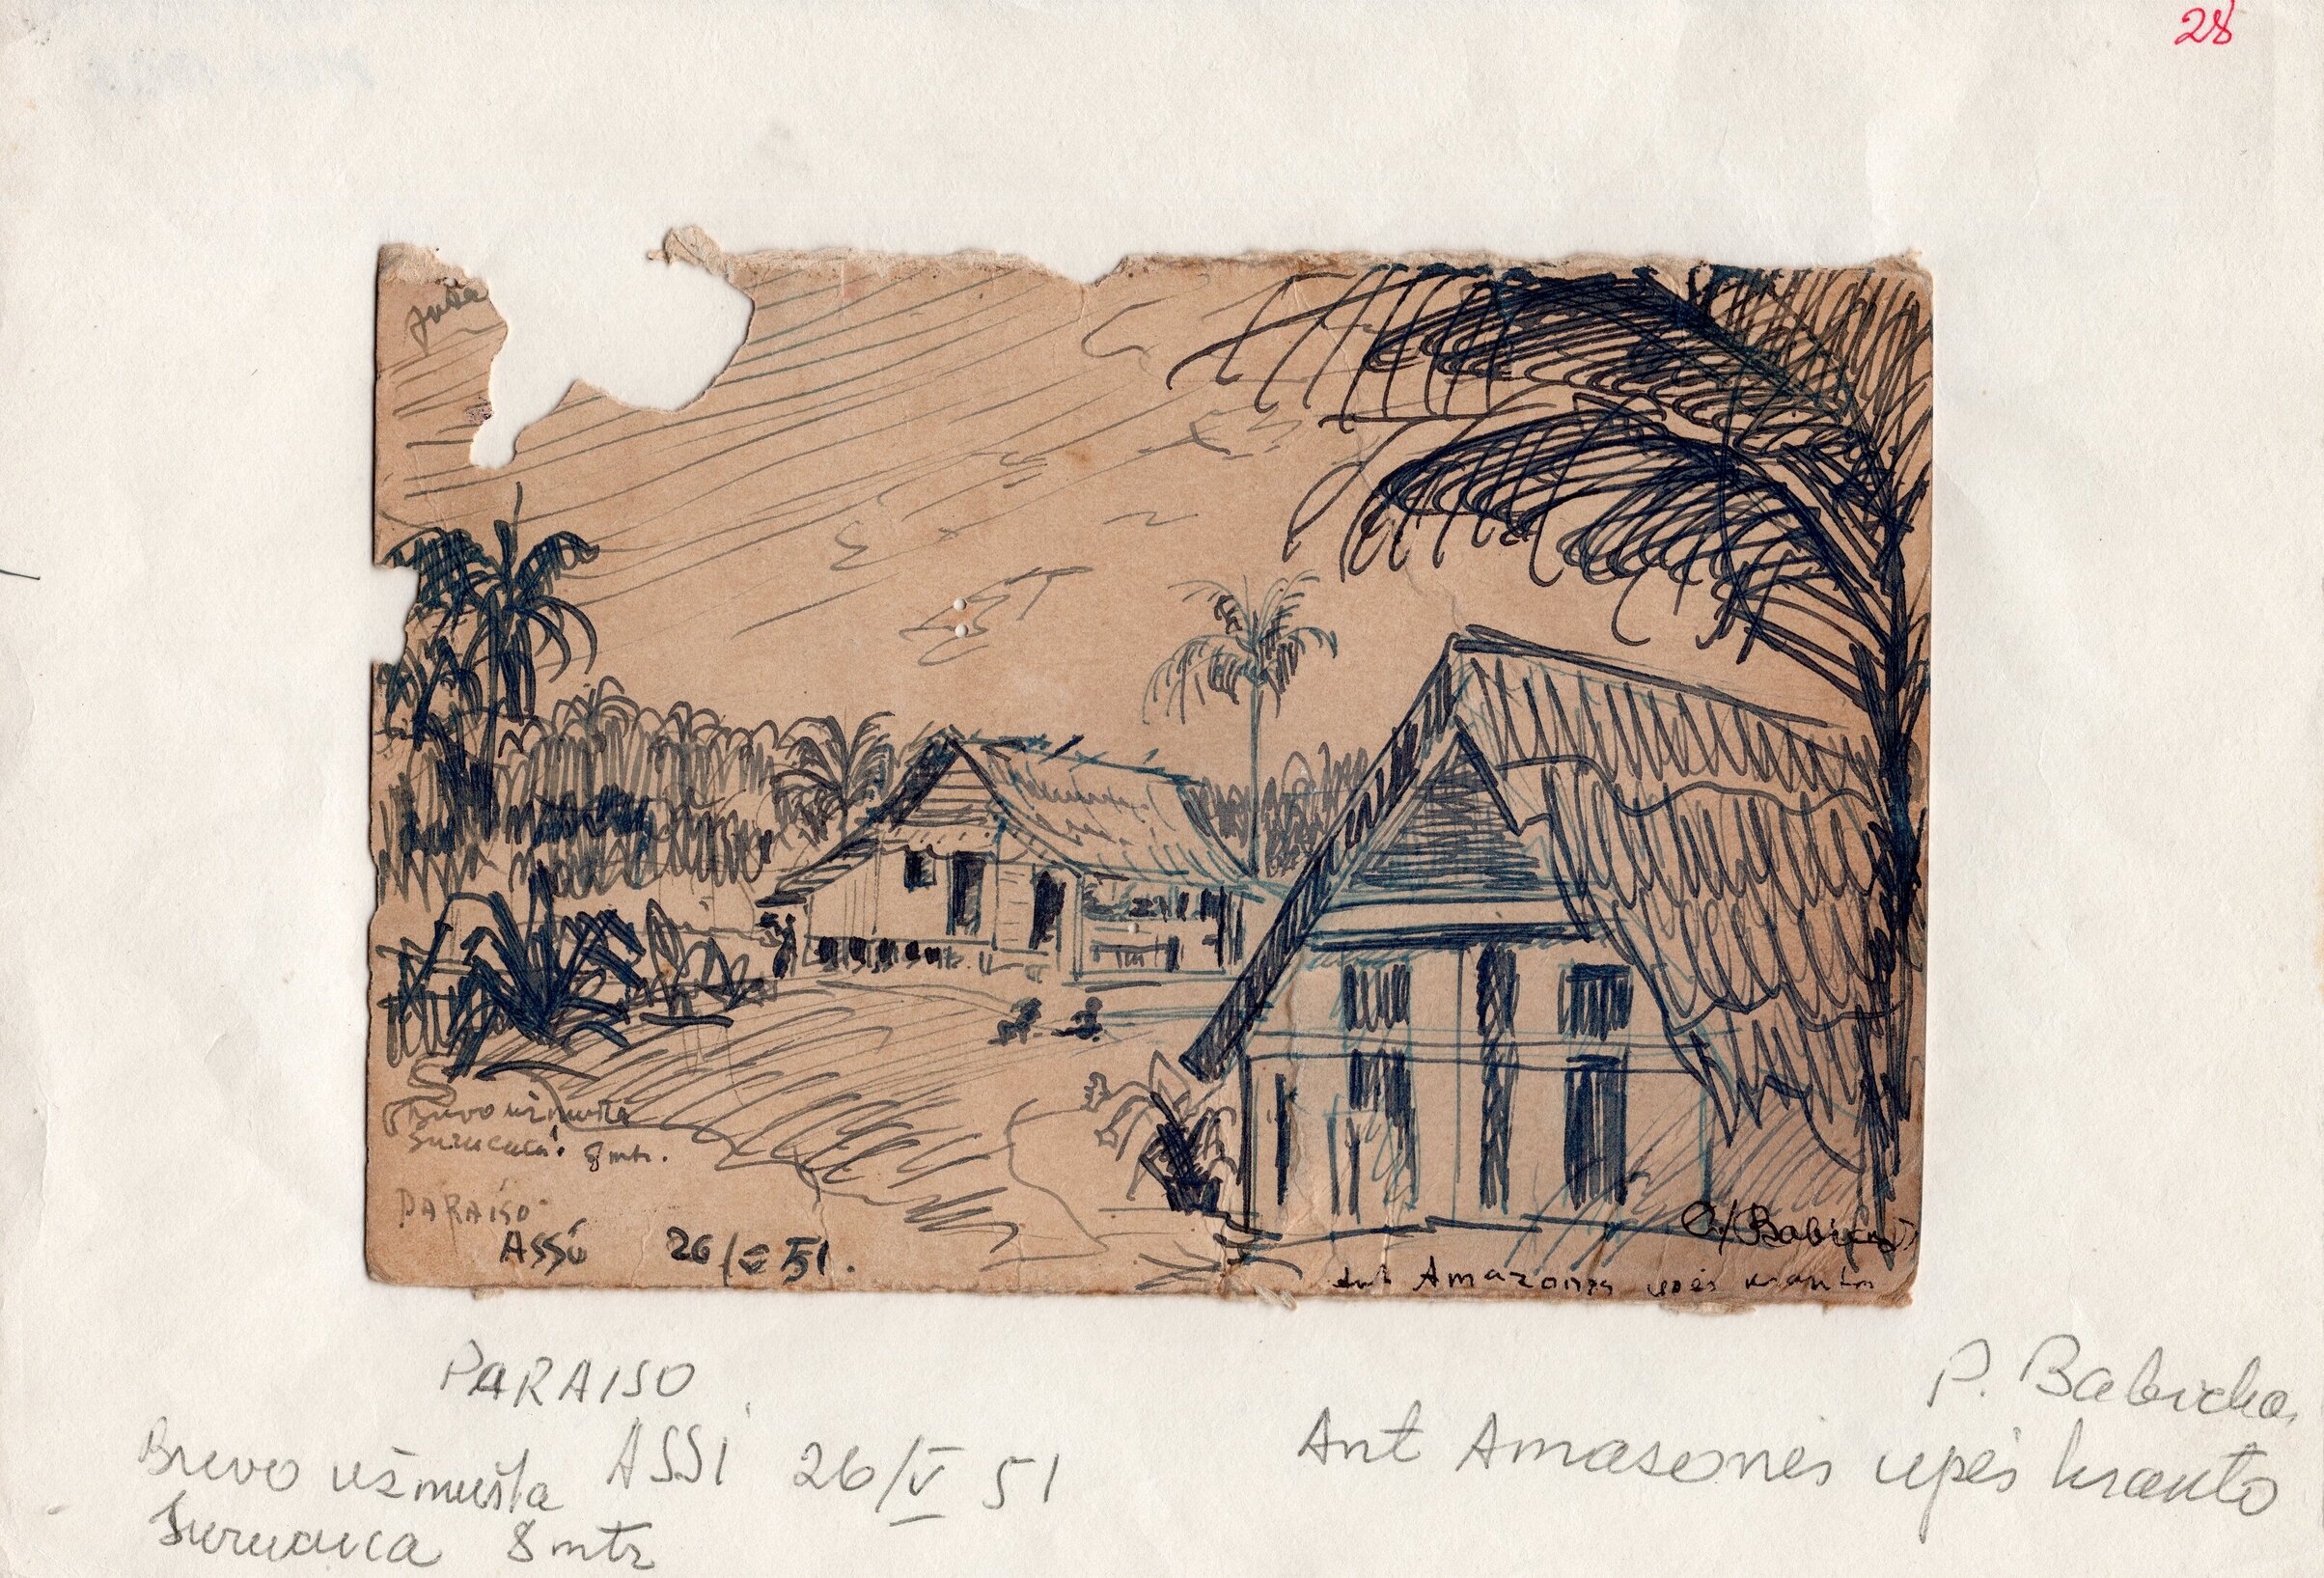 Ant Amazonės upės kranto. P. Babicko piešinys. Brazilija, 1951 m. gegužės 26 d. MLLM 98213